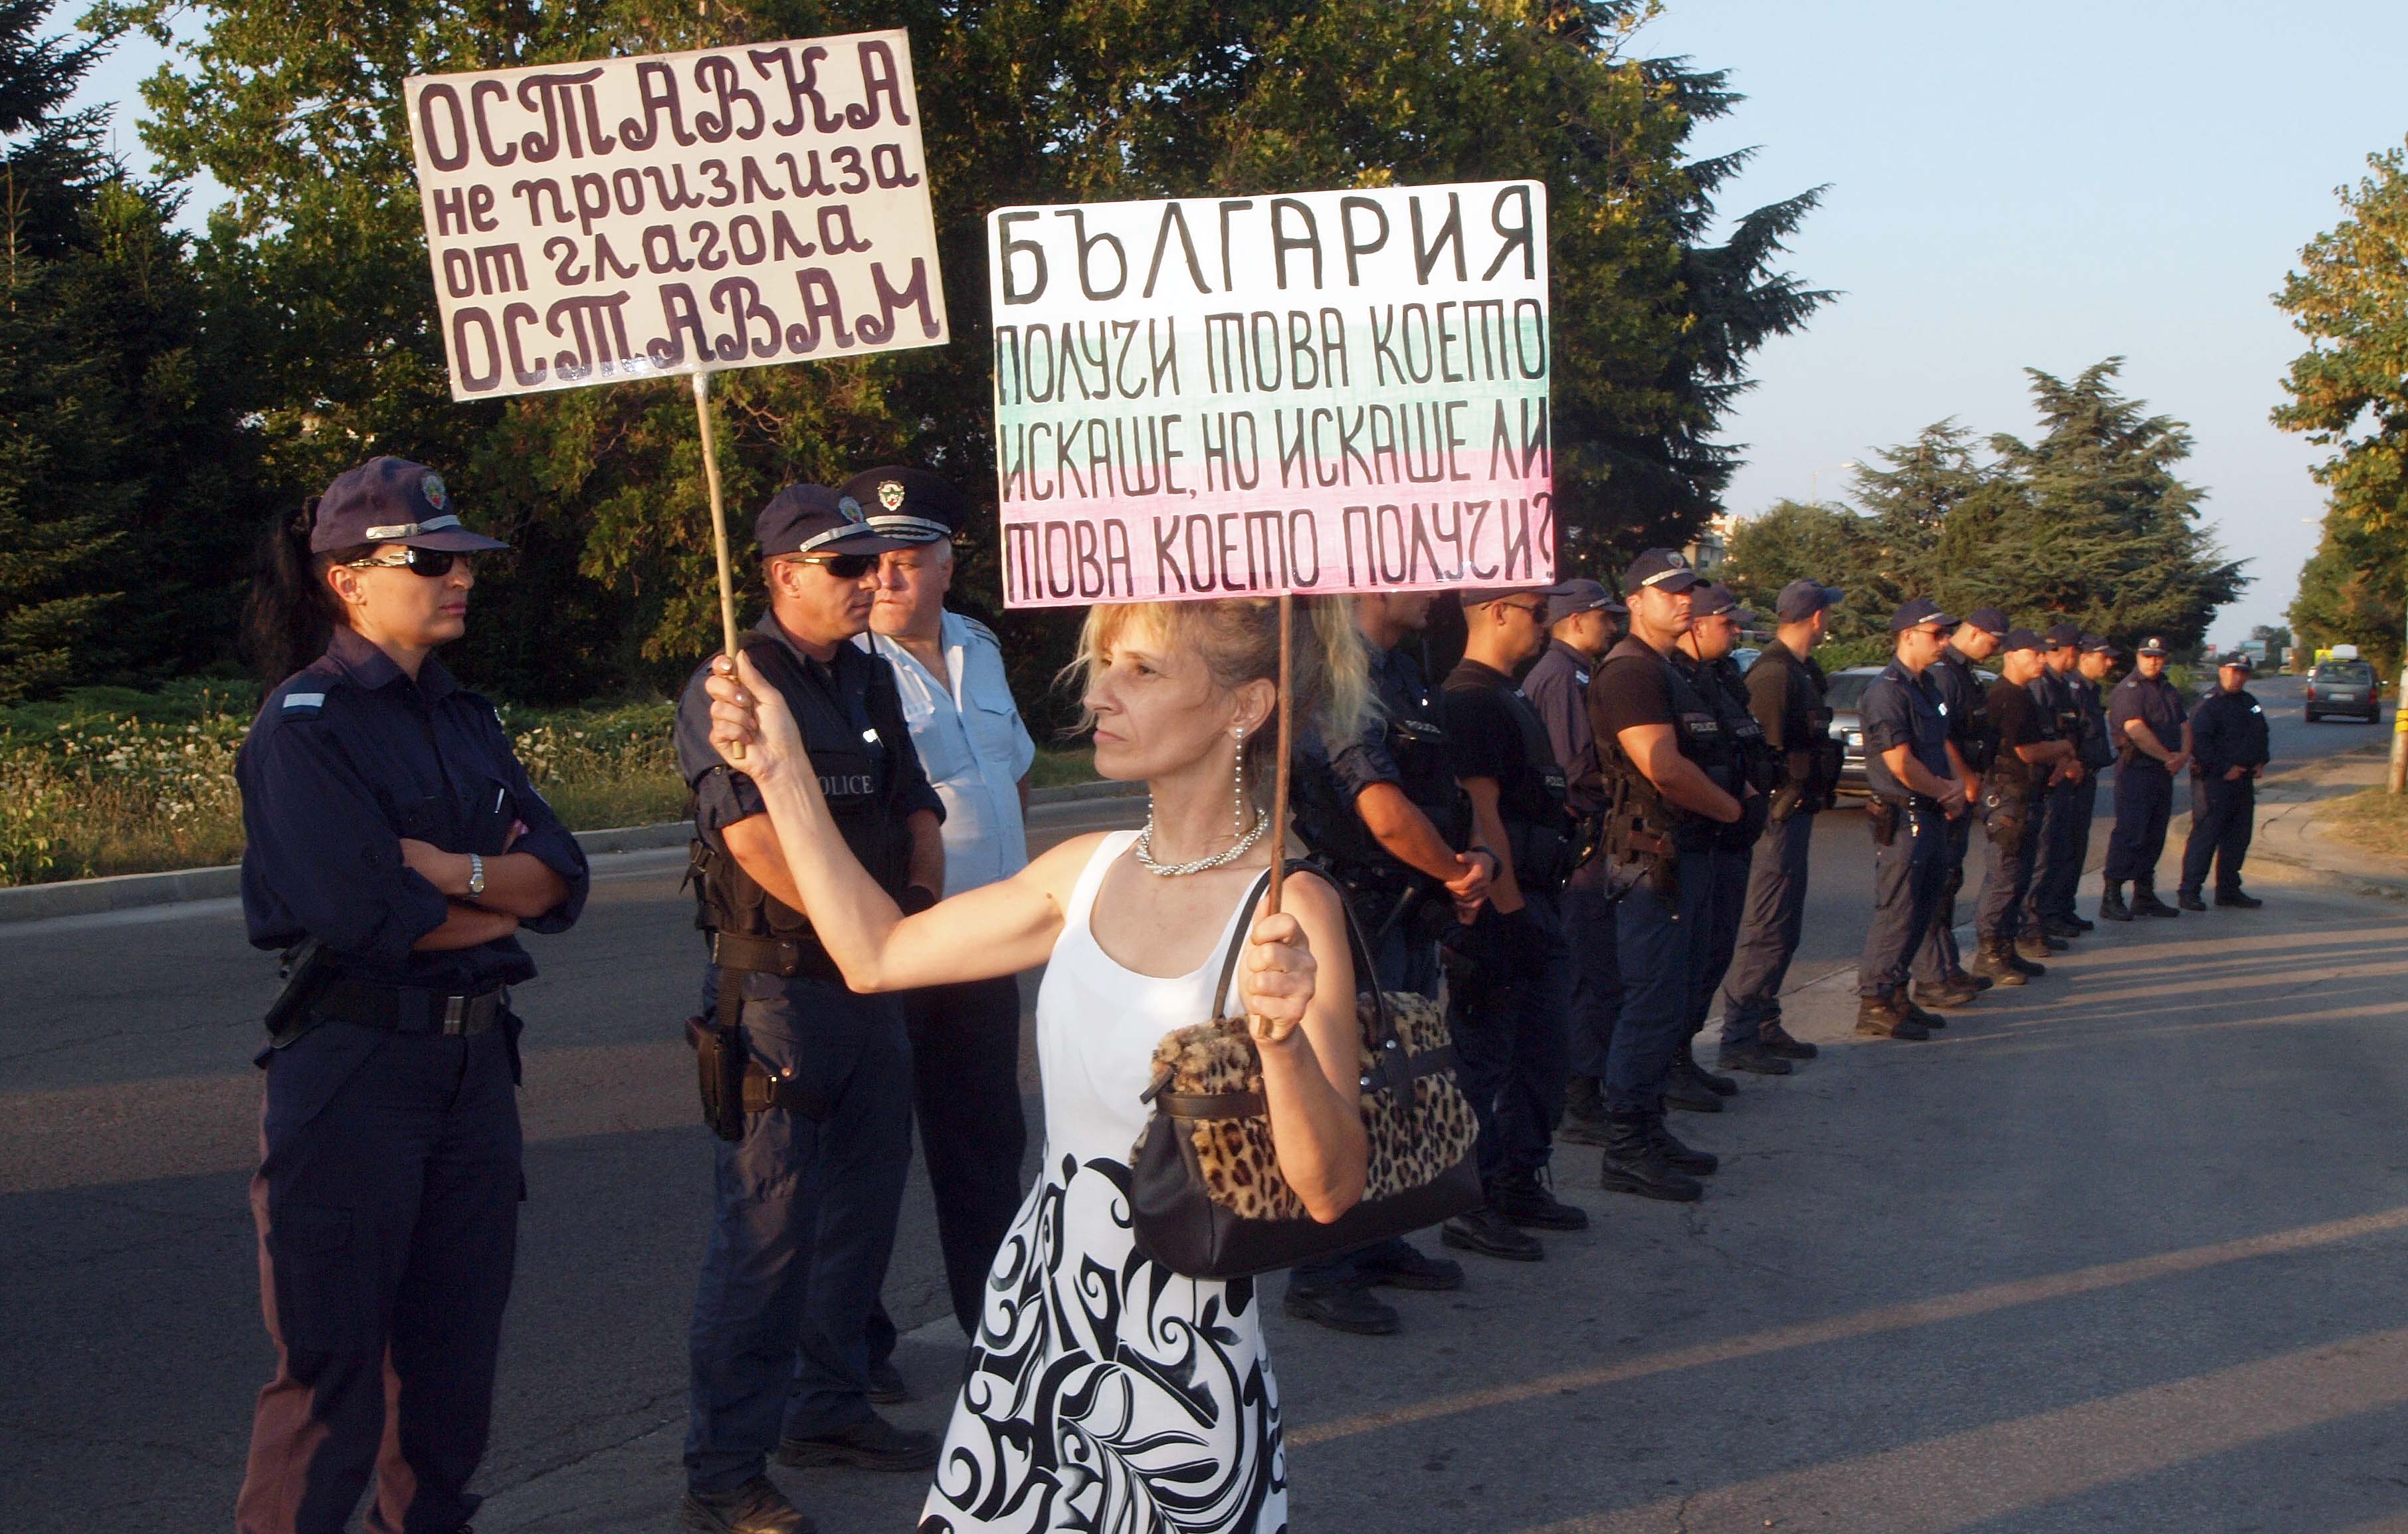 Протестът пред резиденция ”Евксиноград” във вторник вечерта бе малоброен и за кратко време